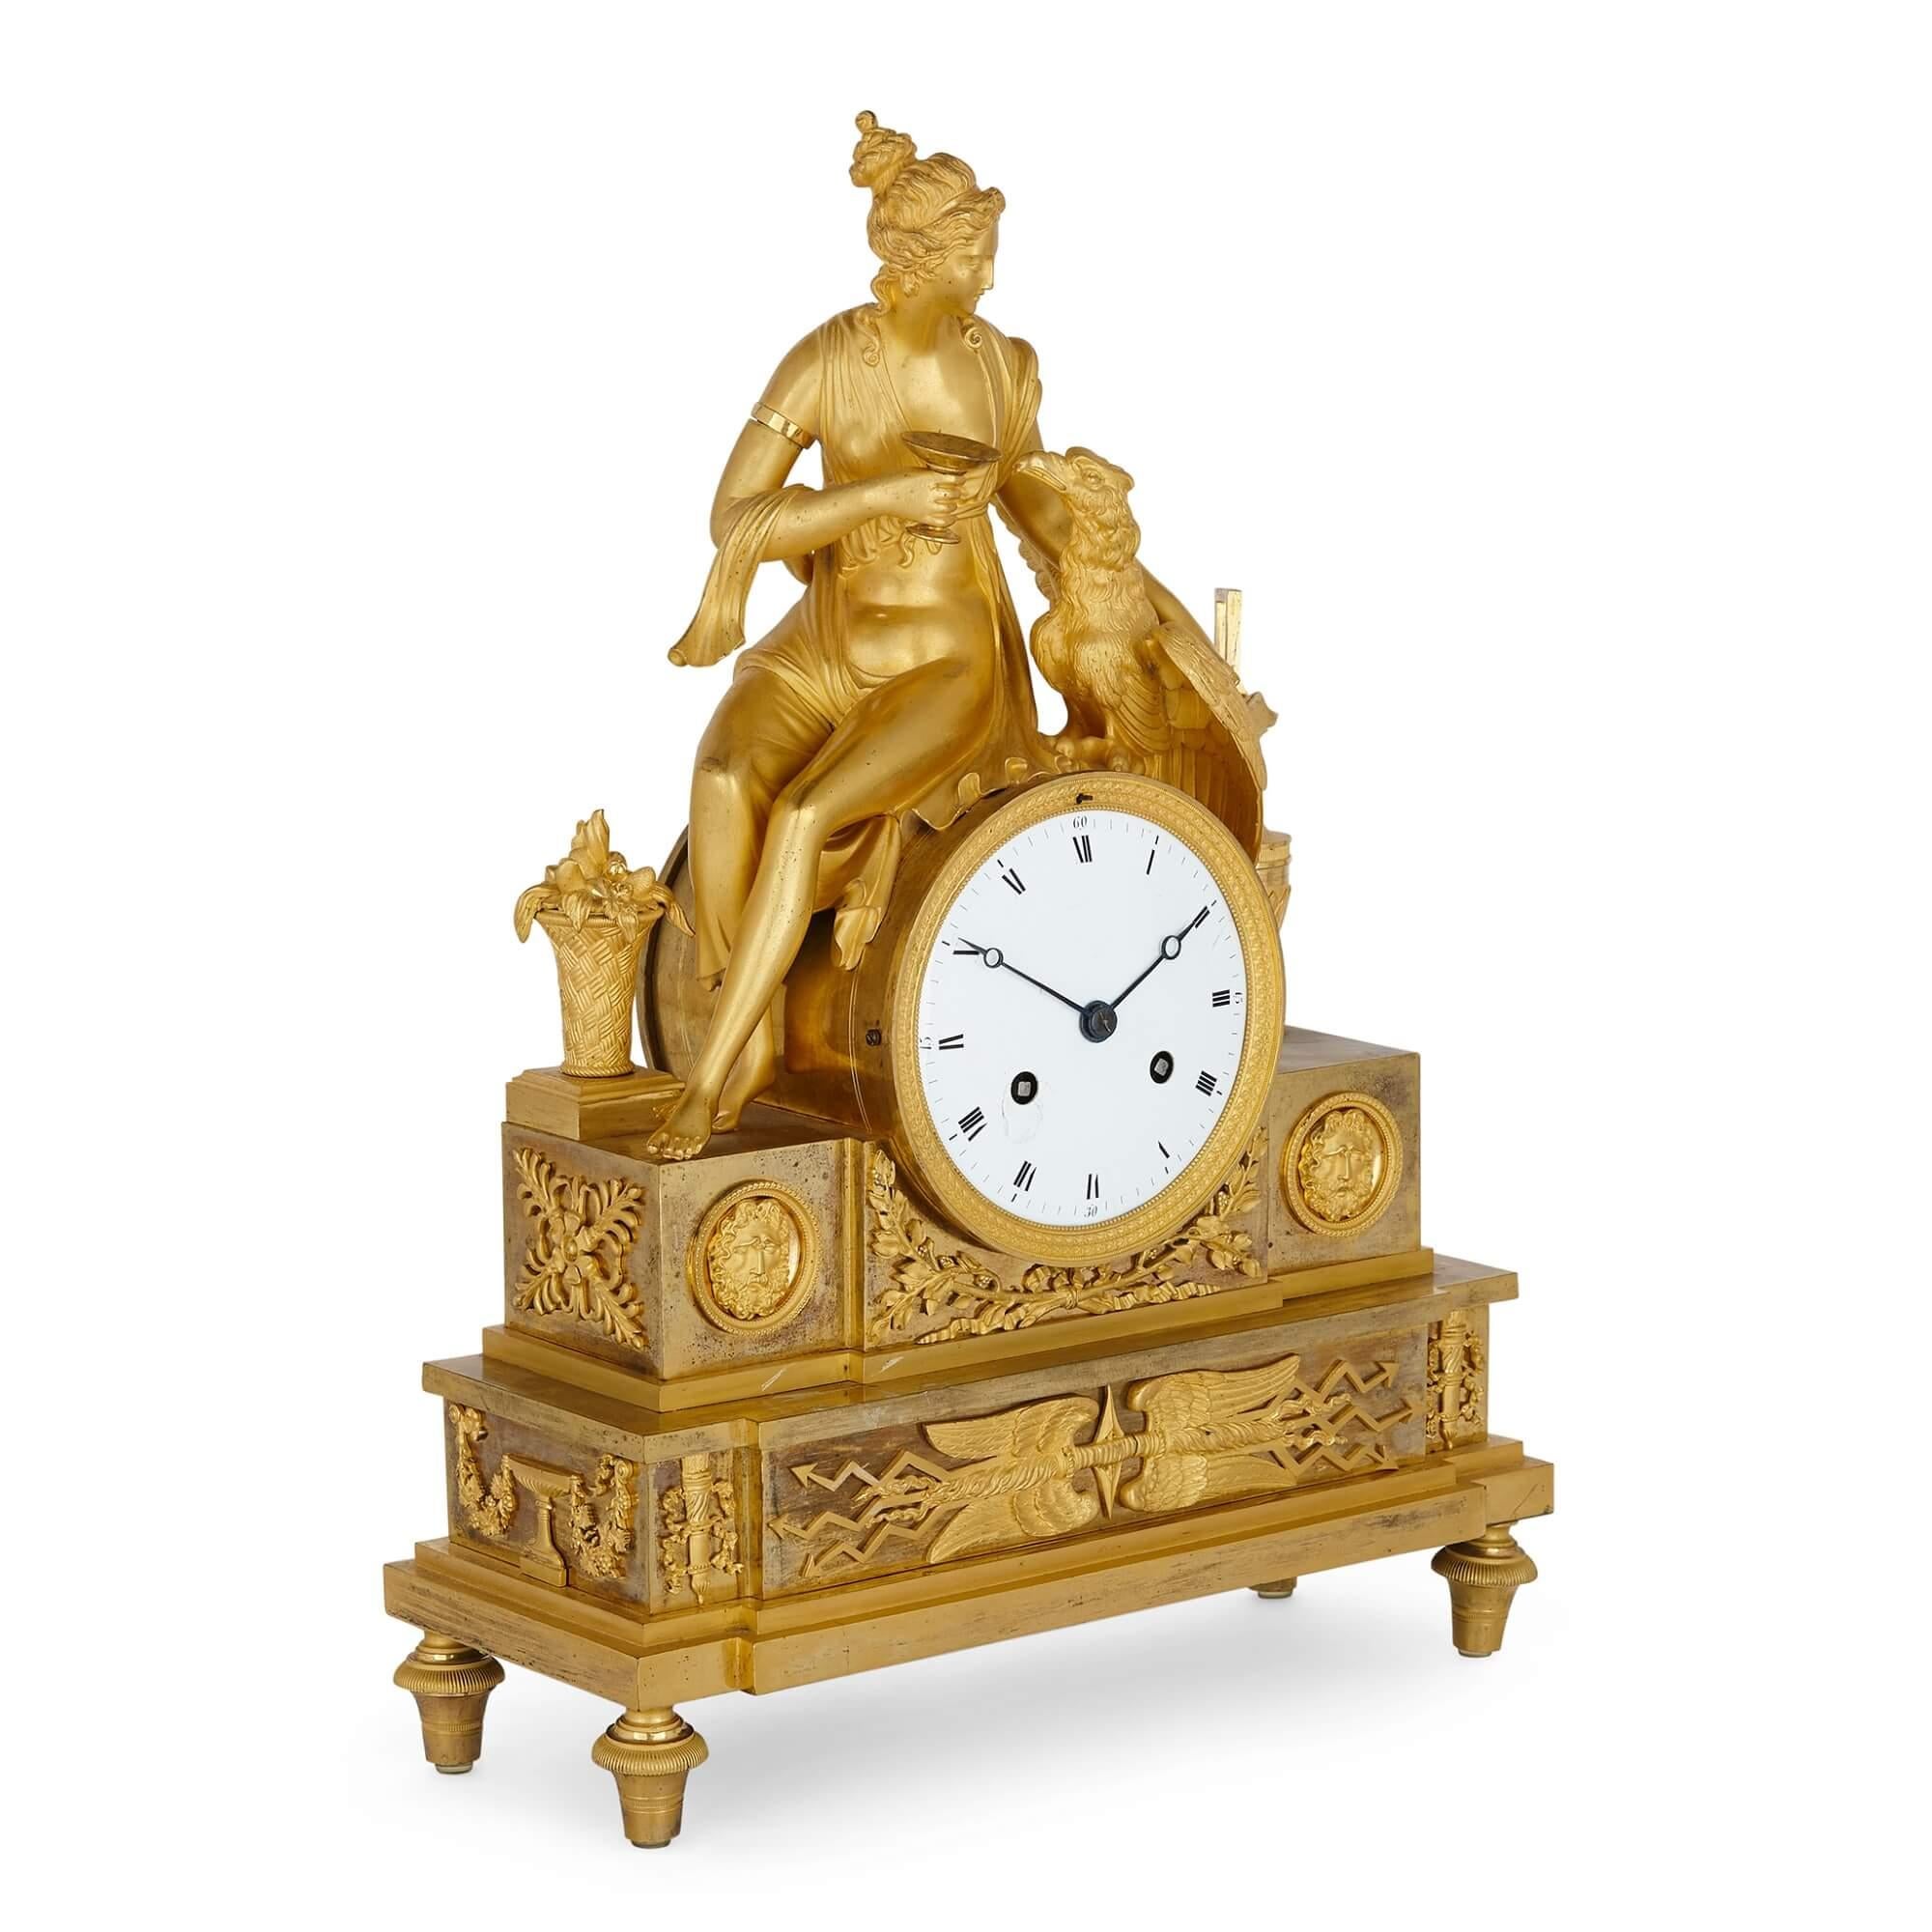 Diese schöne Kaminsimsuhr im neoklassizistischen Stil stammt aus dem frühen 19. Jahrhundert. Die Uhr ist aus vergoldeter Bronze gegossen und zeigt die überragende Figur der Asteria, die mit der Figur eines Adlers sitzt, der Zeus verwandelt. Die